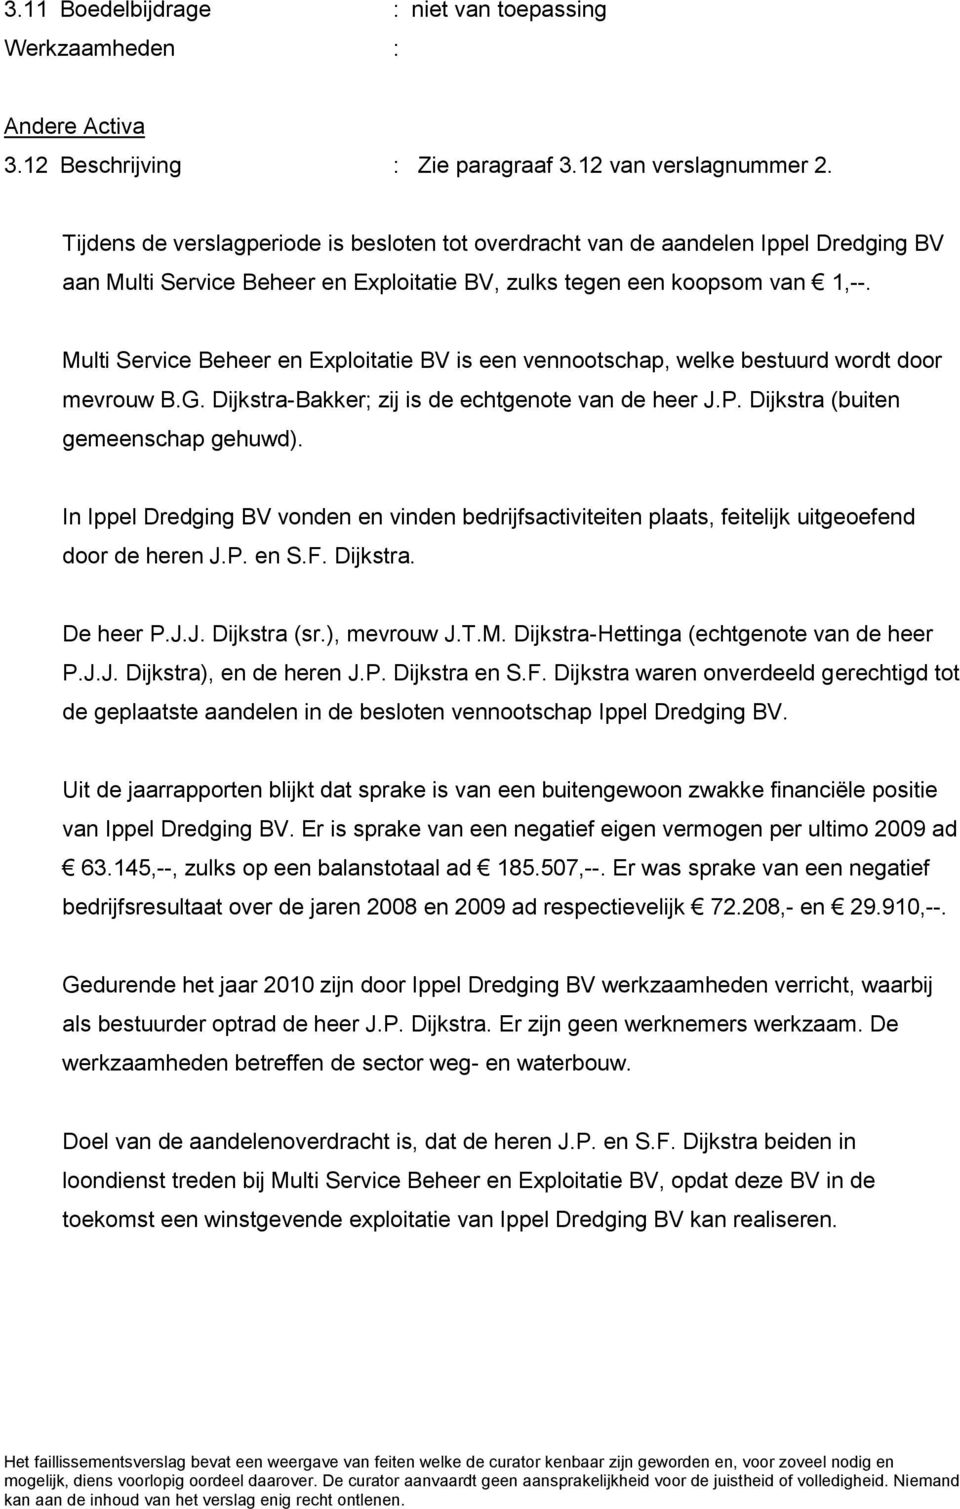 Multi Service Beheer en Exploitatie BV is een vennootschap, welke bestuurd wordt door mevrouw B.G. Dijkstra-Bakker; zij is de echtgenote van de heer J.P. Dijkstra (buiten gemeenschap gehuwd).